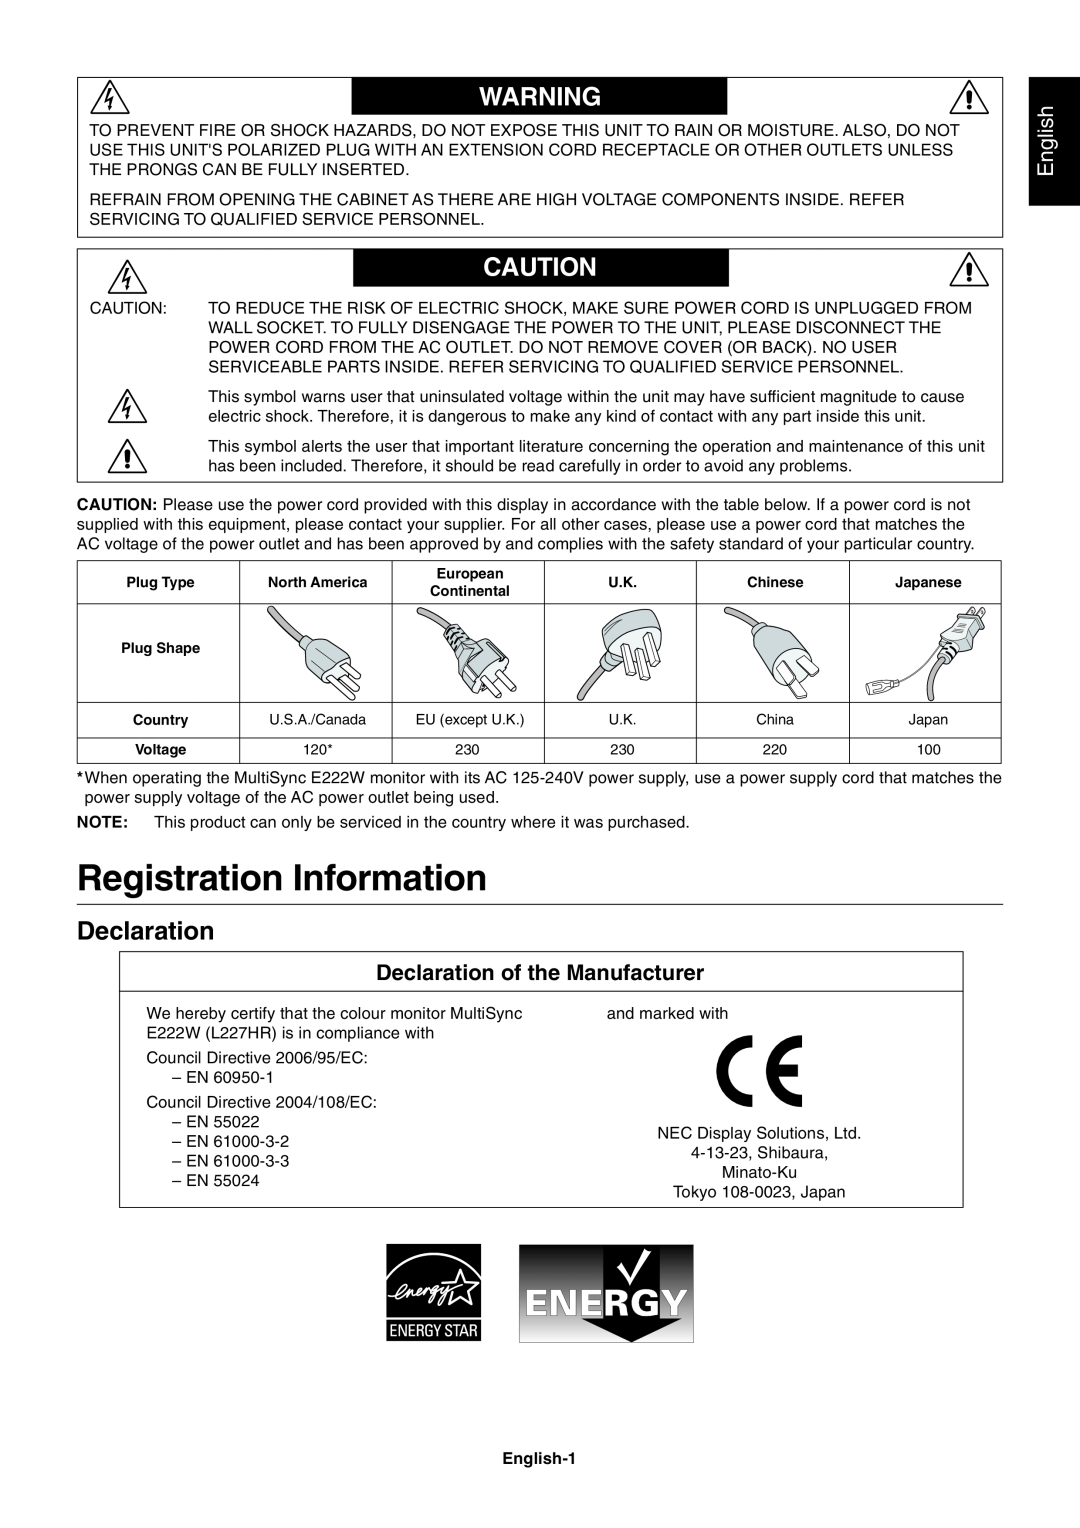 NEC L227HR user manual Registration Information, Declaration of the Manufacturer, English-1 